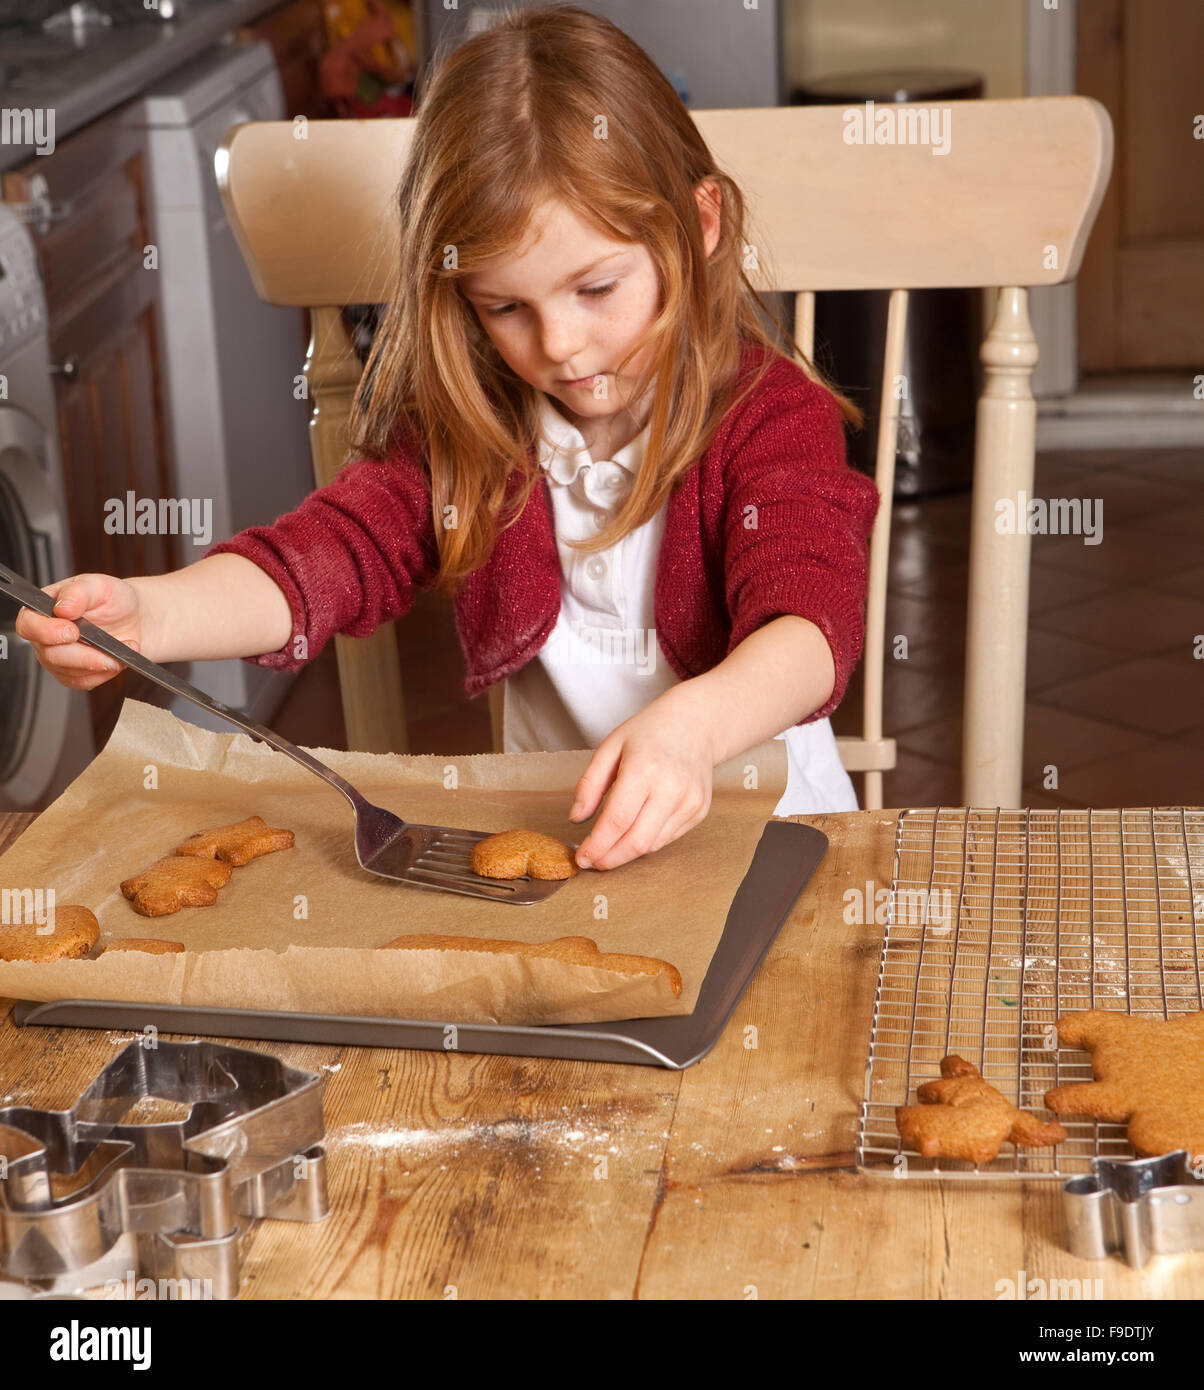 Direttamente dal forno. Il pan di zenzero è stata cotta e la giovane ragazza è attentamente prendendo il pane caldo dal vassoio. Foto Stock